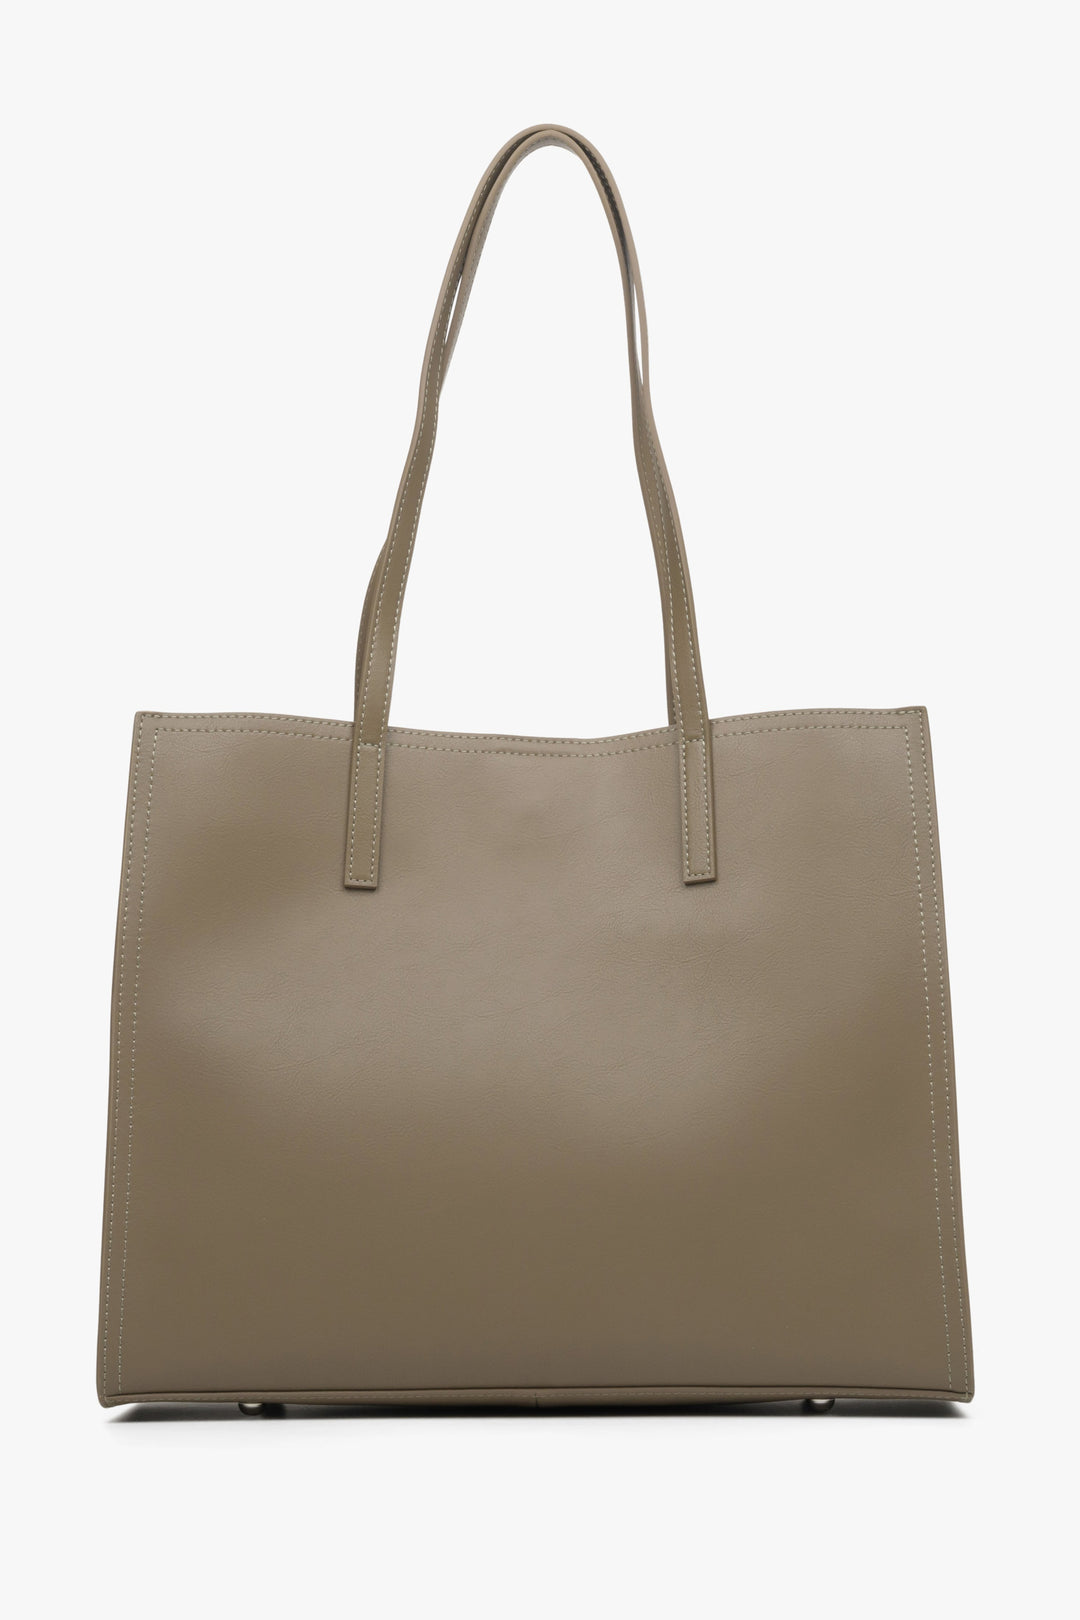 Damska, skórzana torebka typu shopper marki Estro w kolorze brązowym - tył.